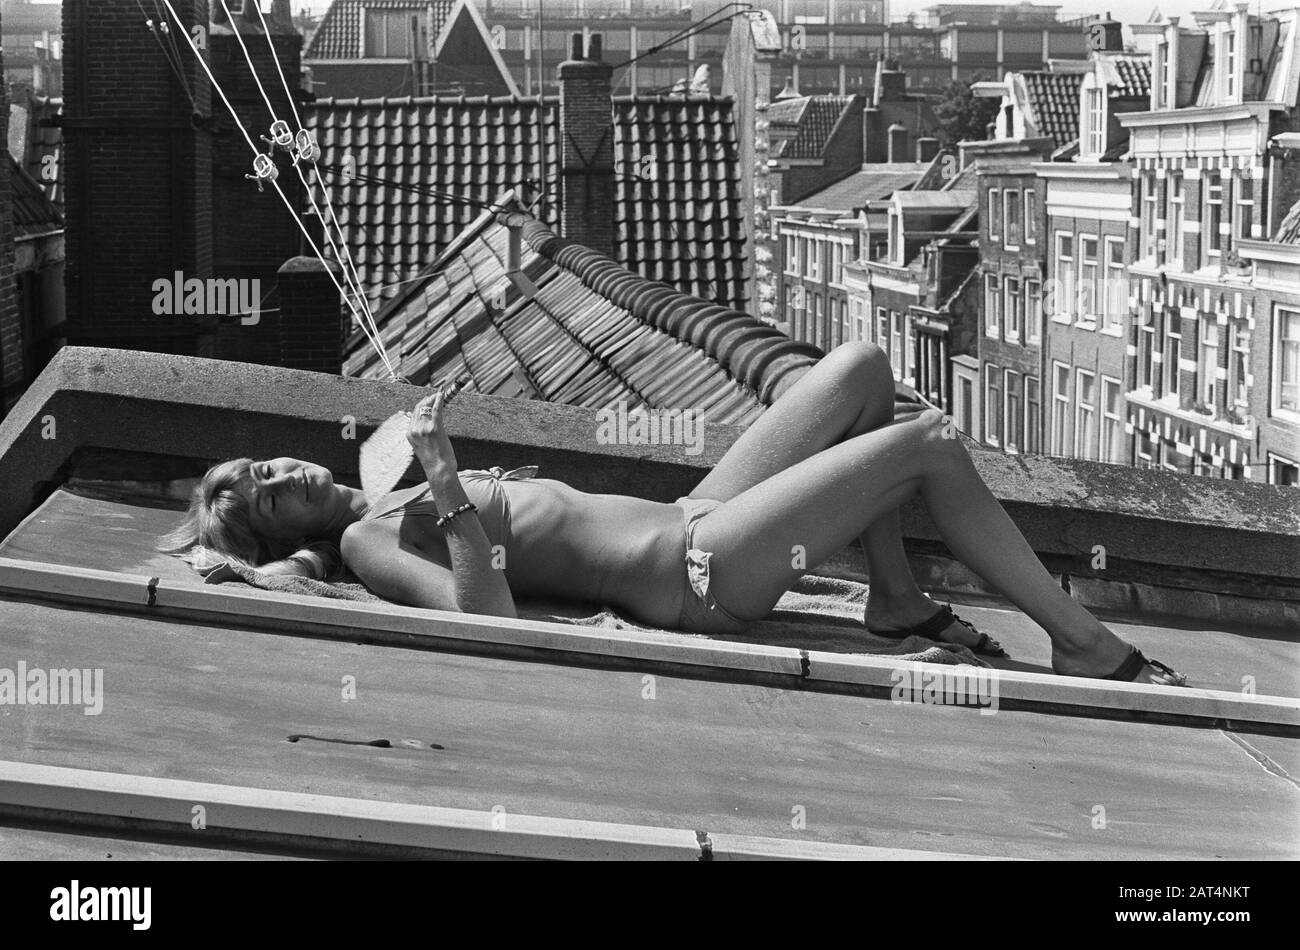 La più calda giornata estiva ad Amsterdam la giovane donna prende il sole in una grondaia Data: 4 agosto 1975 luogo: Amsterdam, Noord-Holland Parole Chiave: Immagini della città, attività ricreative, donne, calore, estate Foto Stock